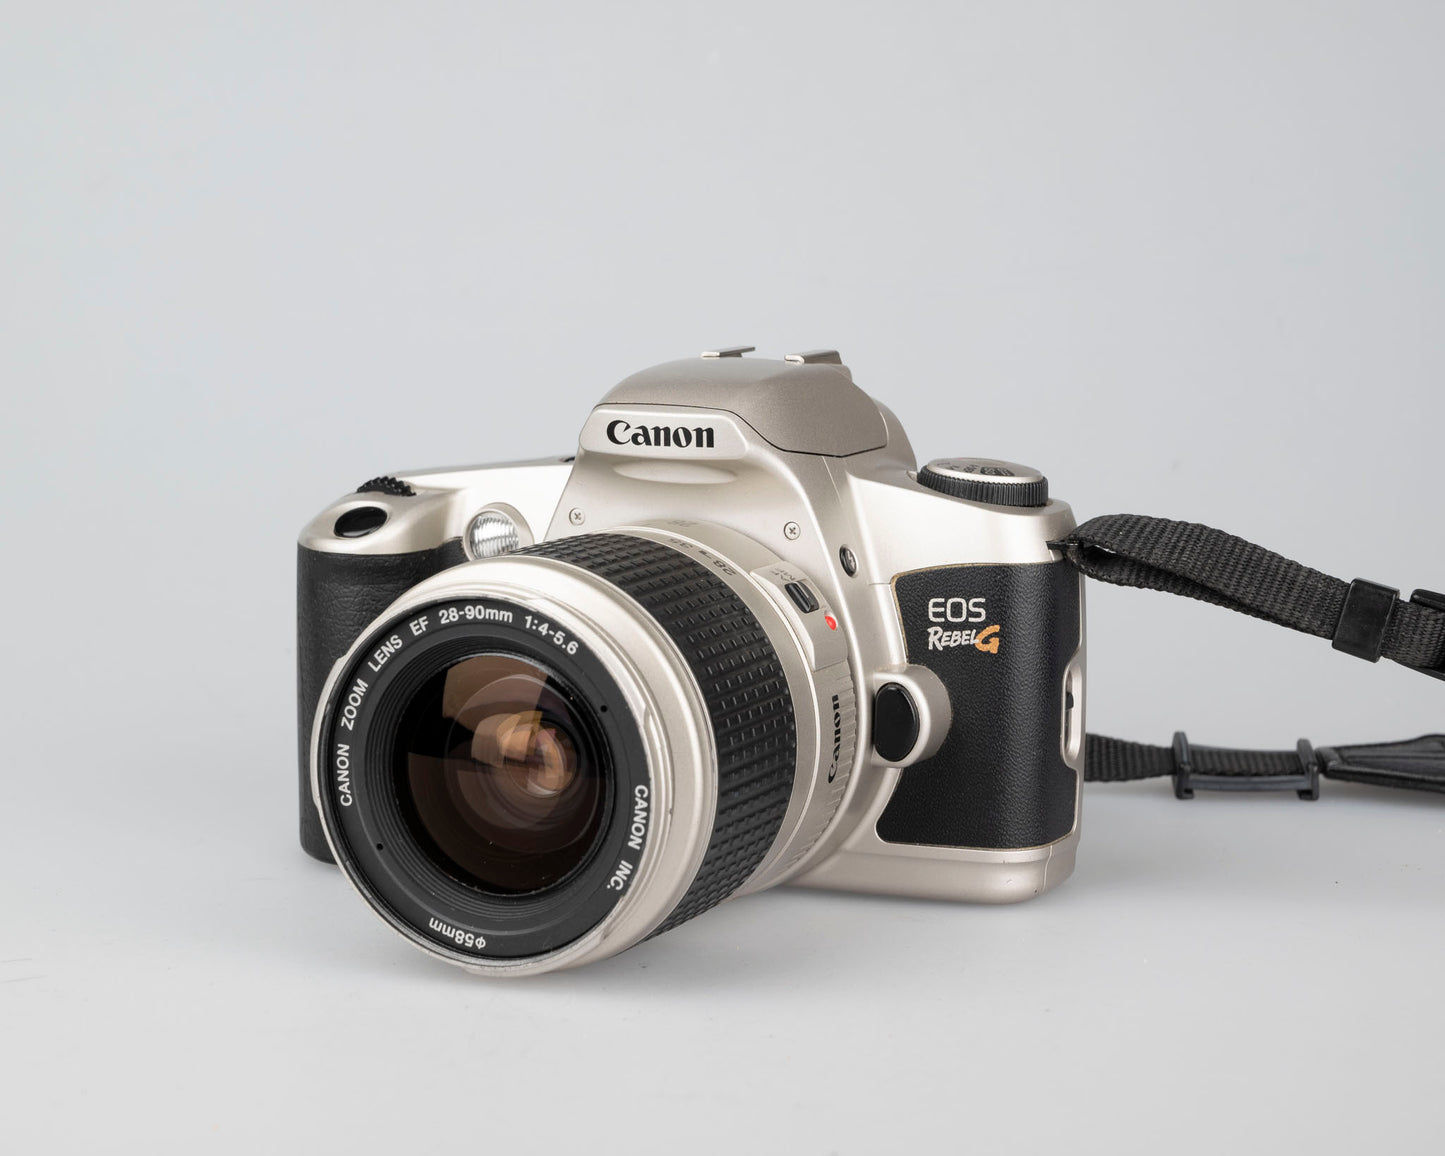 Reflex à film Canon EOS Rebel G 35 mm avec objectif EF 28-90 mm (série 4108062)